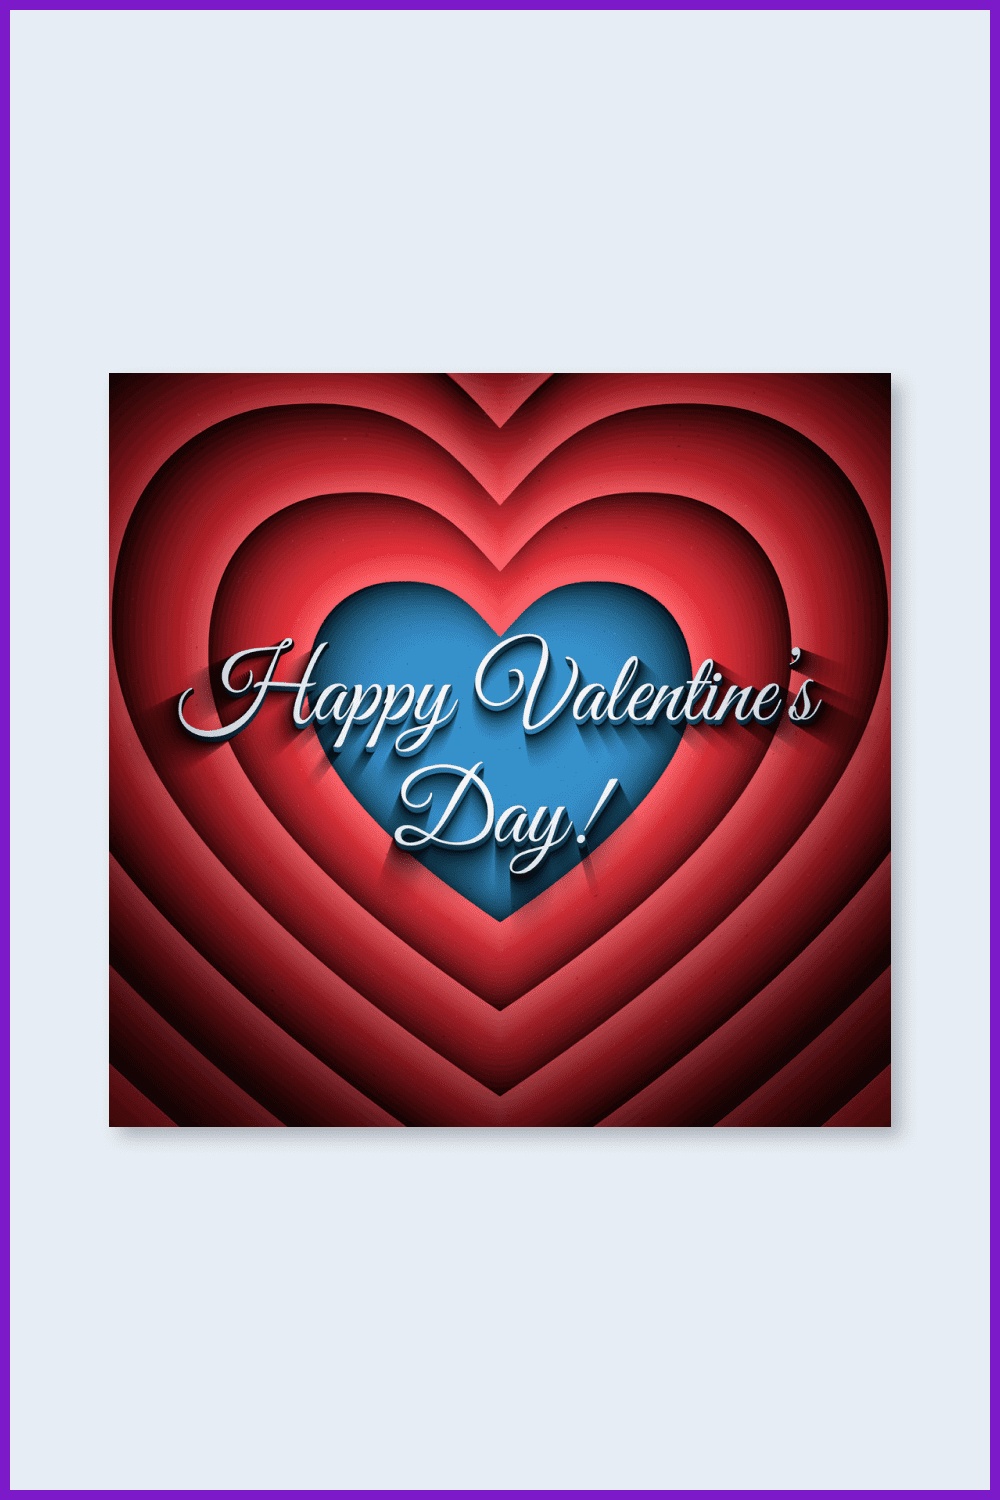 Happy Valentine’s Day retro background vector image.